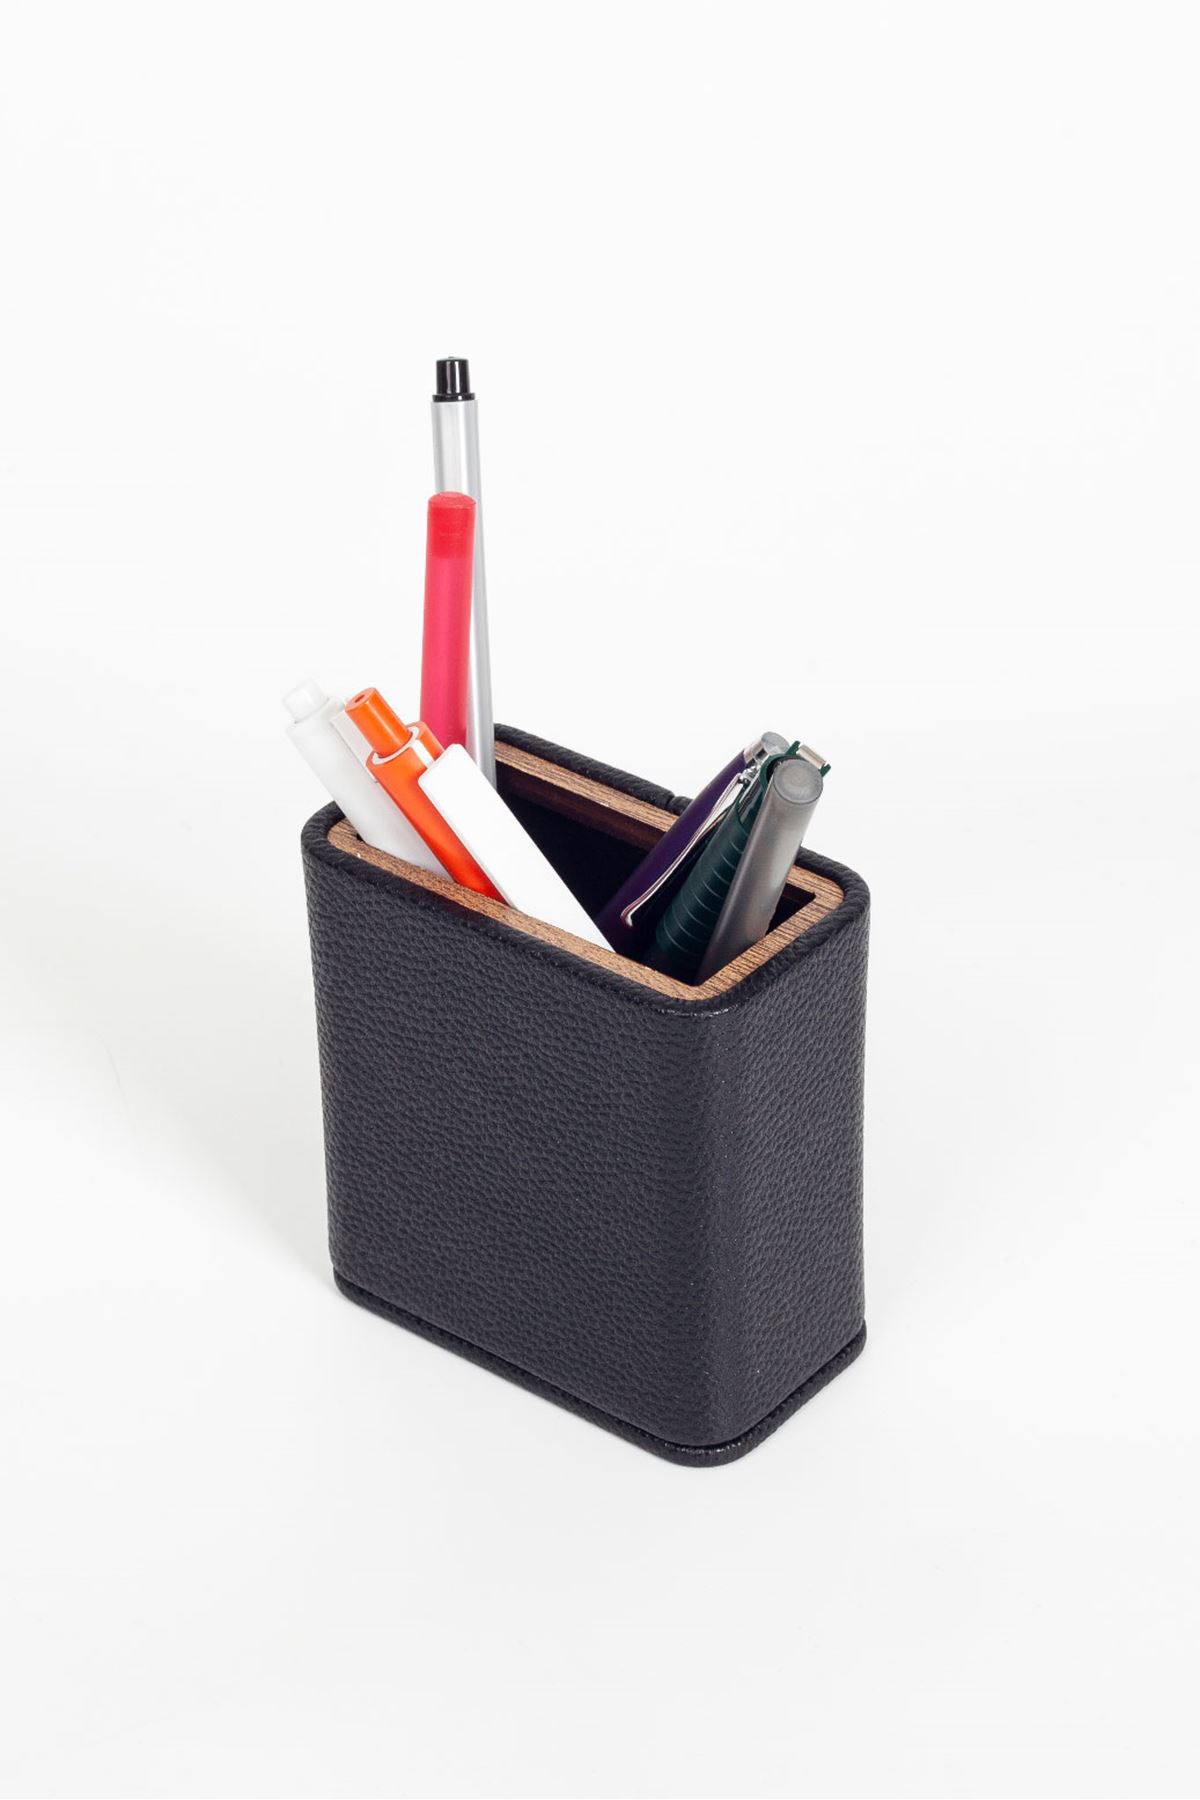 Desktop Leather Wooden Detailed Pen Holder Black